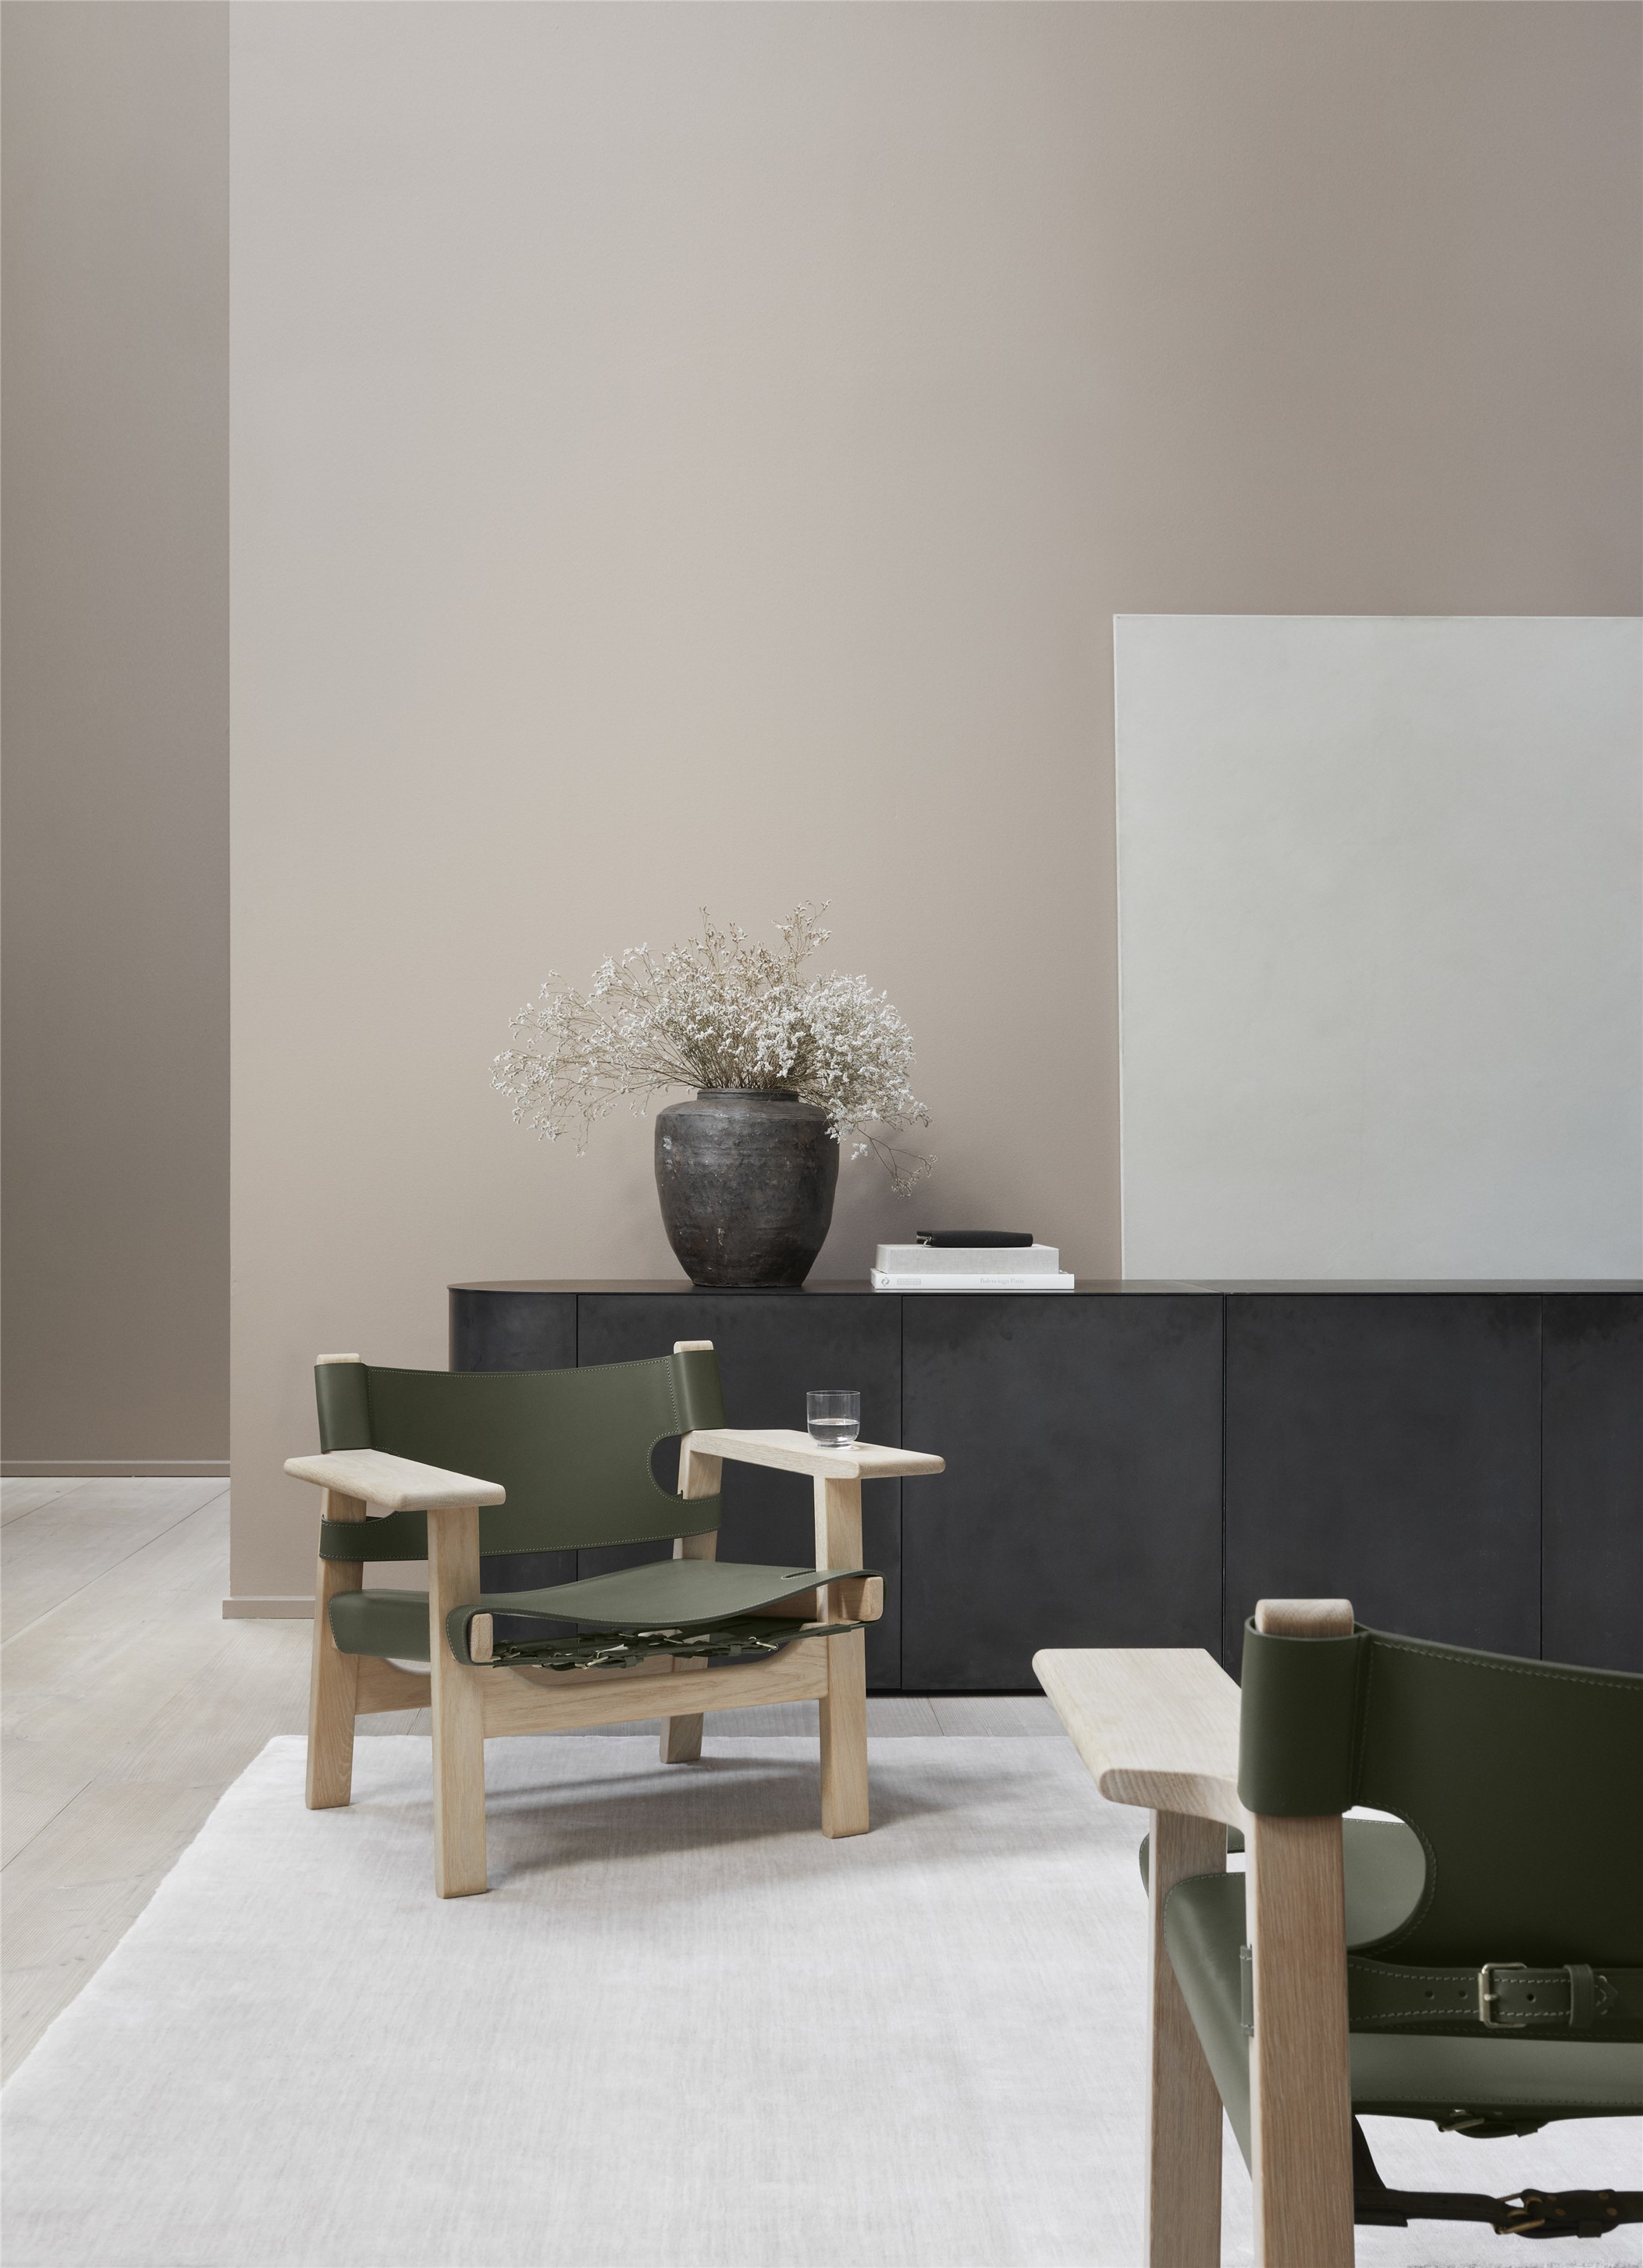 Spanish Chair-Børge Mogensen-Fredericia special edition elledecoration vn 4